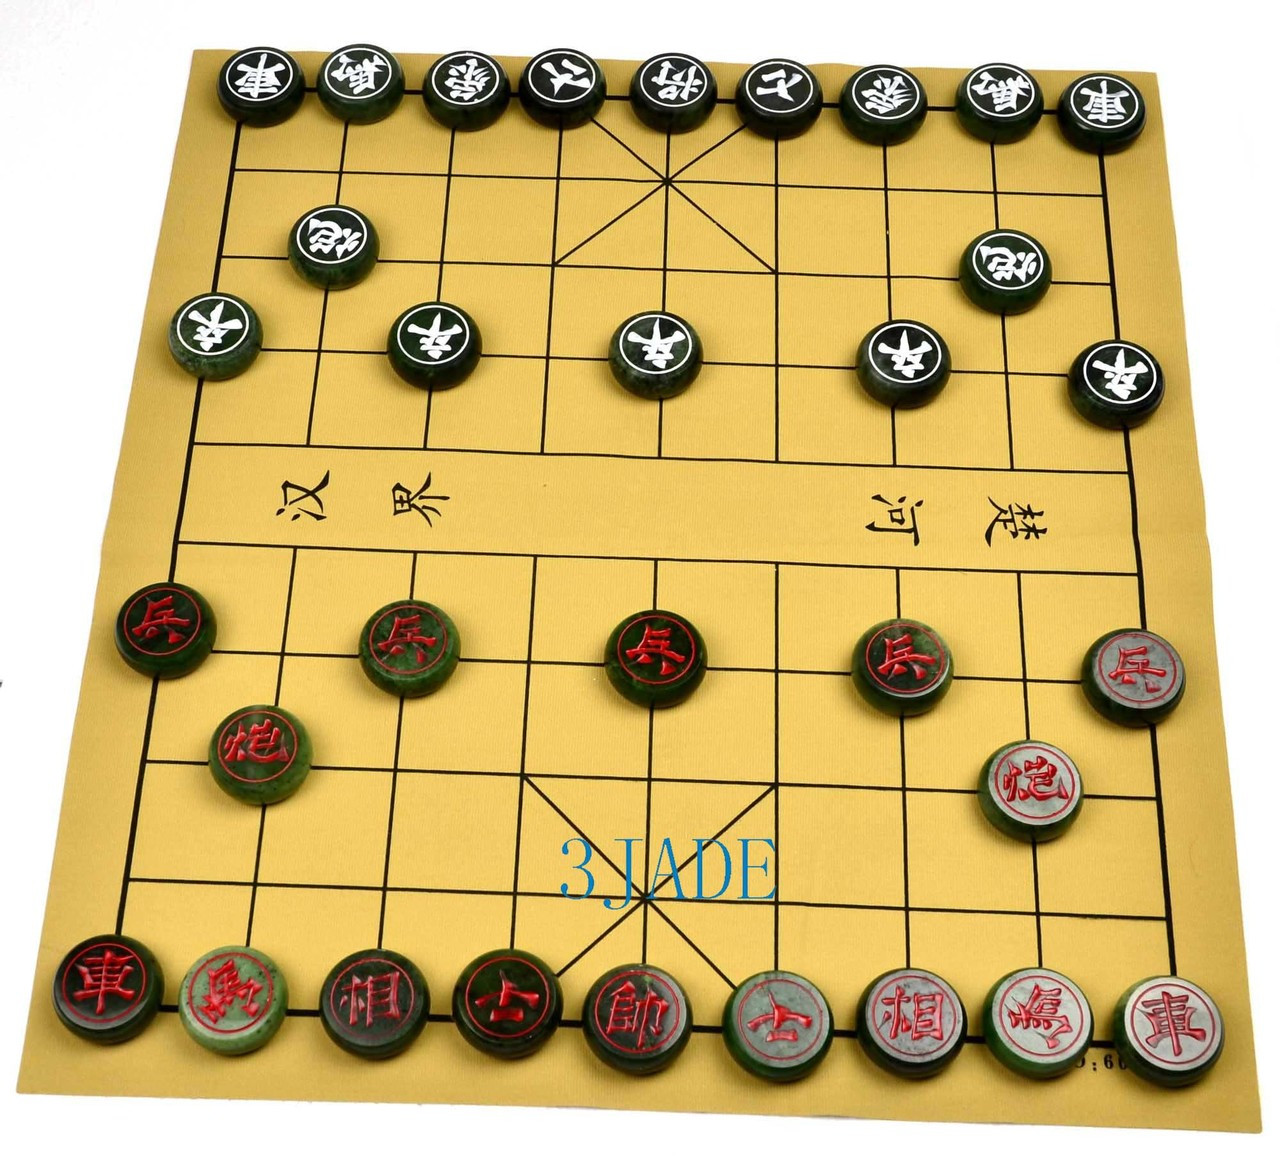 50mm Green Nephrite Jade XiangQi / Stone Chinese Chess Game Set 碧玉中国象棋